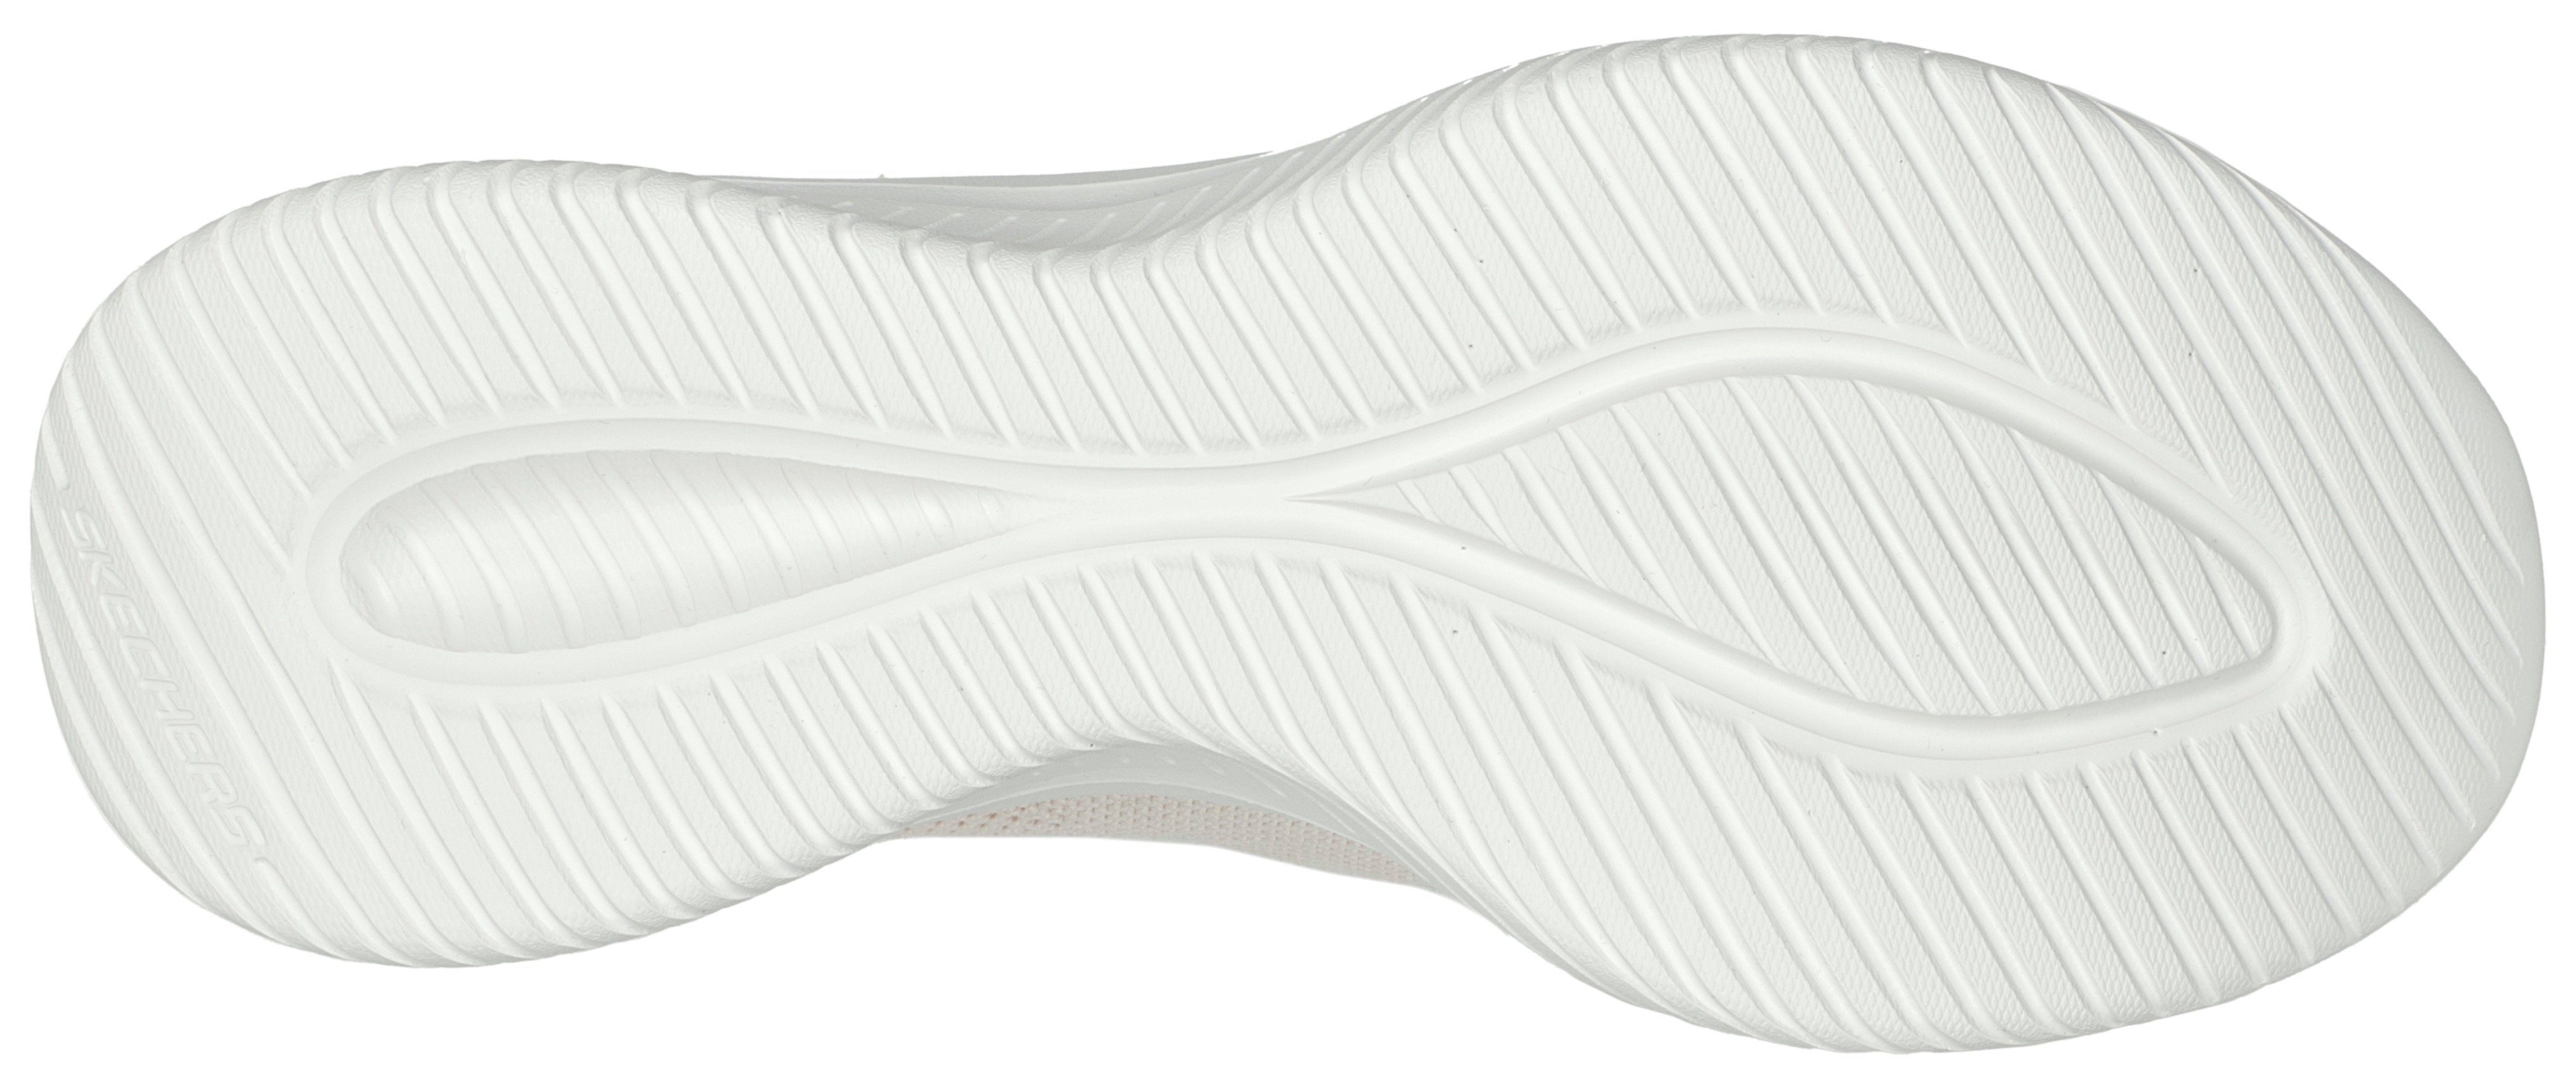 Sneaker FLEX beige mit Skechers leichten Slip Ins-Funktion ULTRA 3.0 Einschlupf für Slip-On